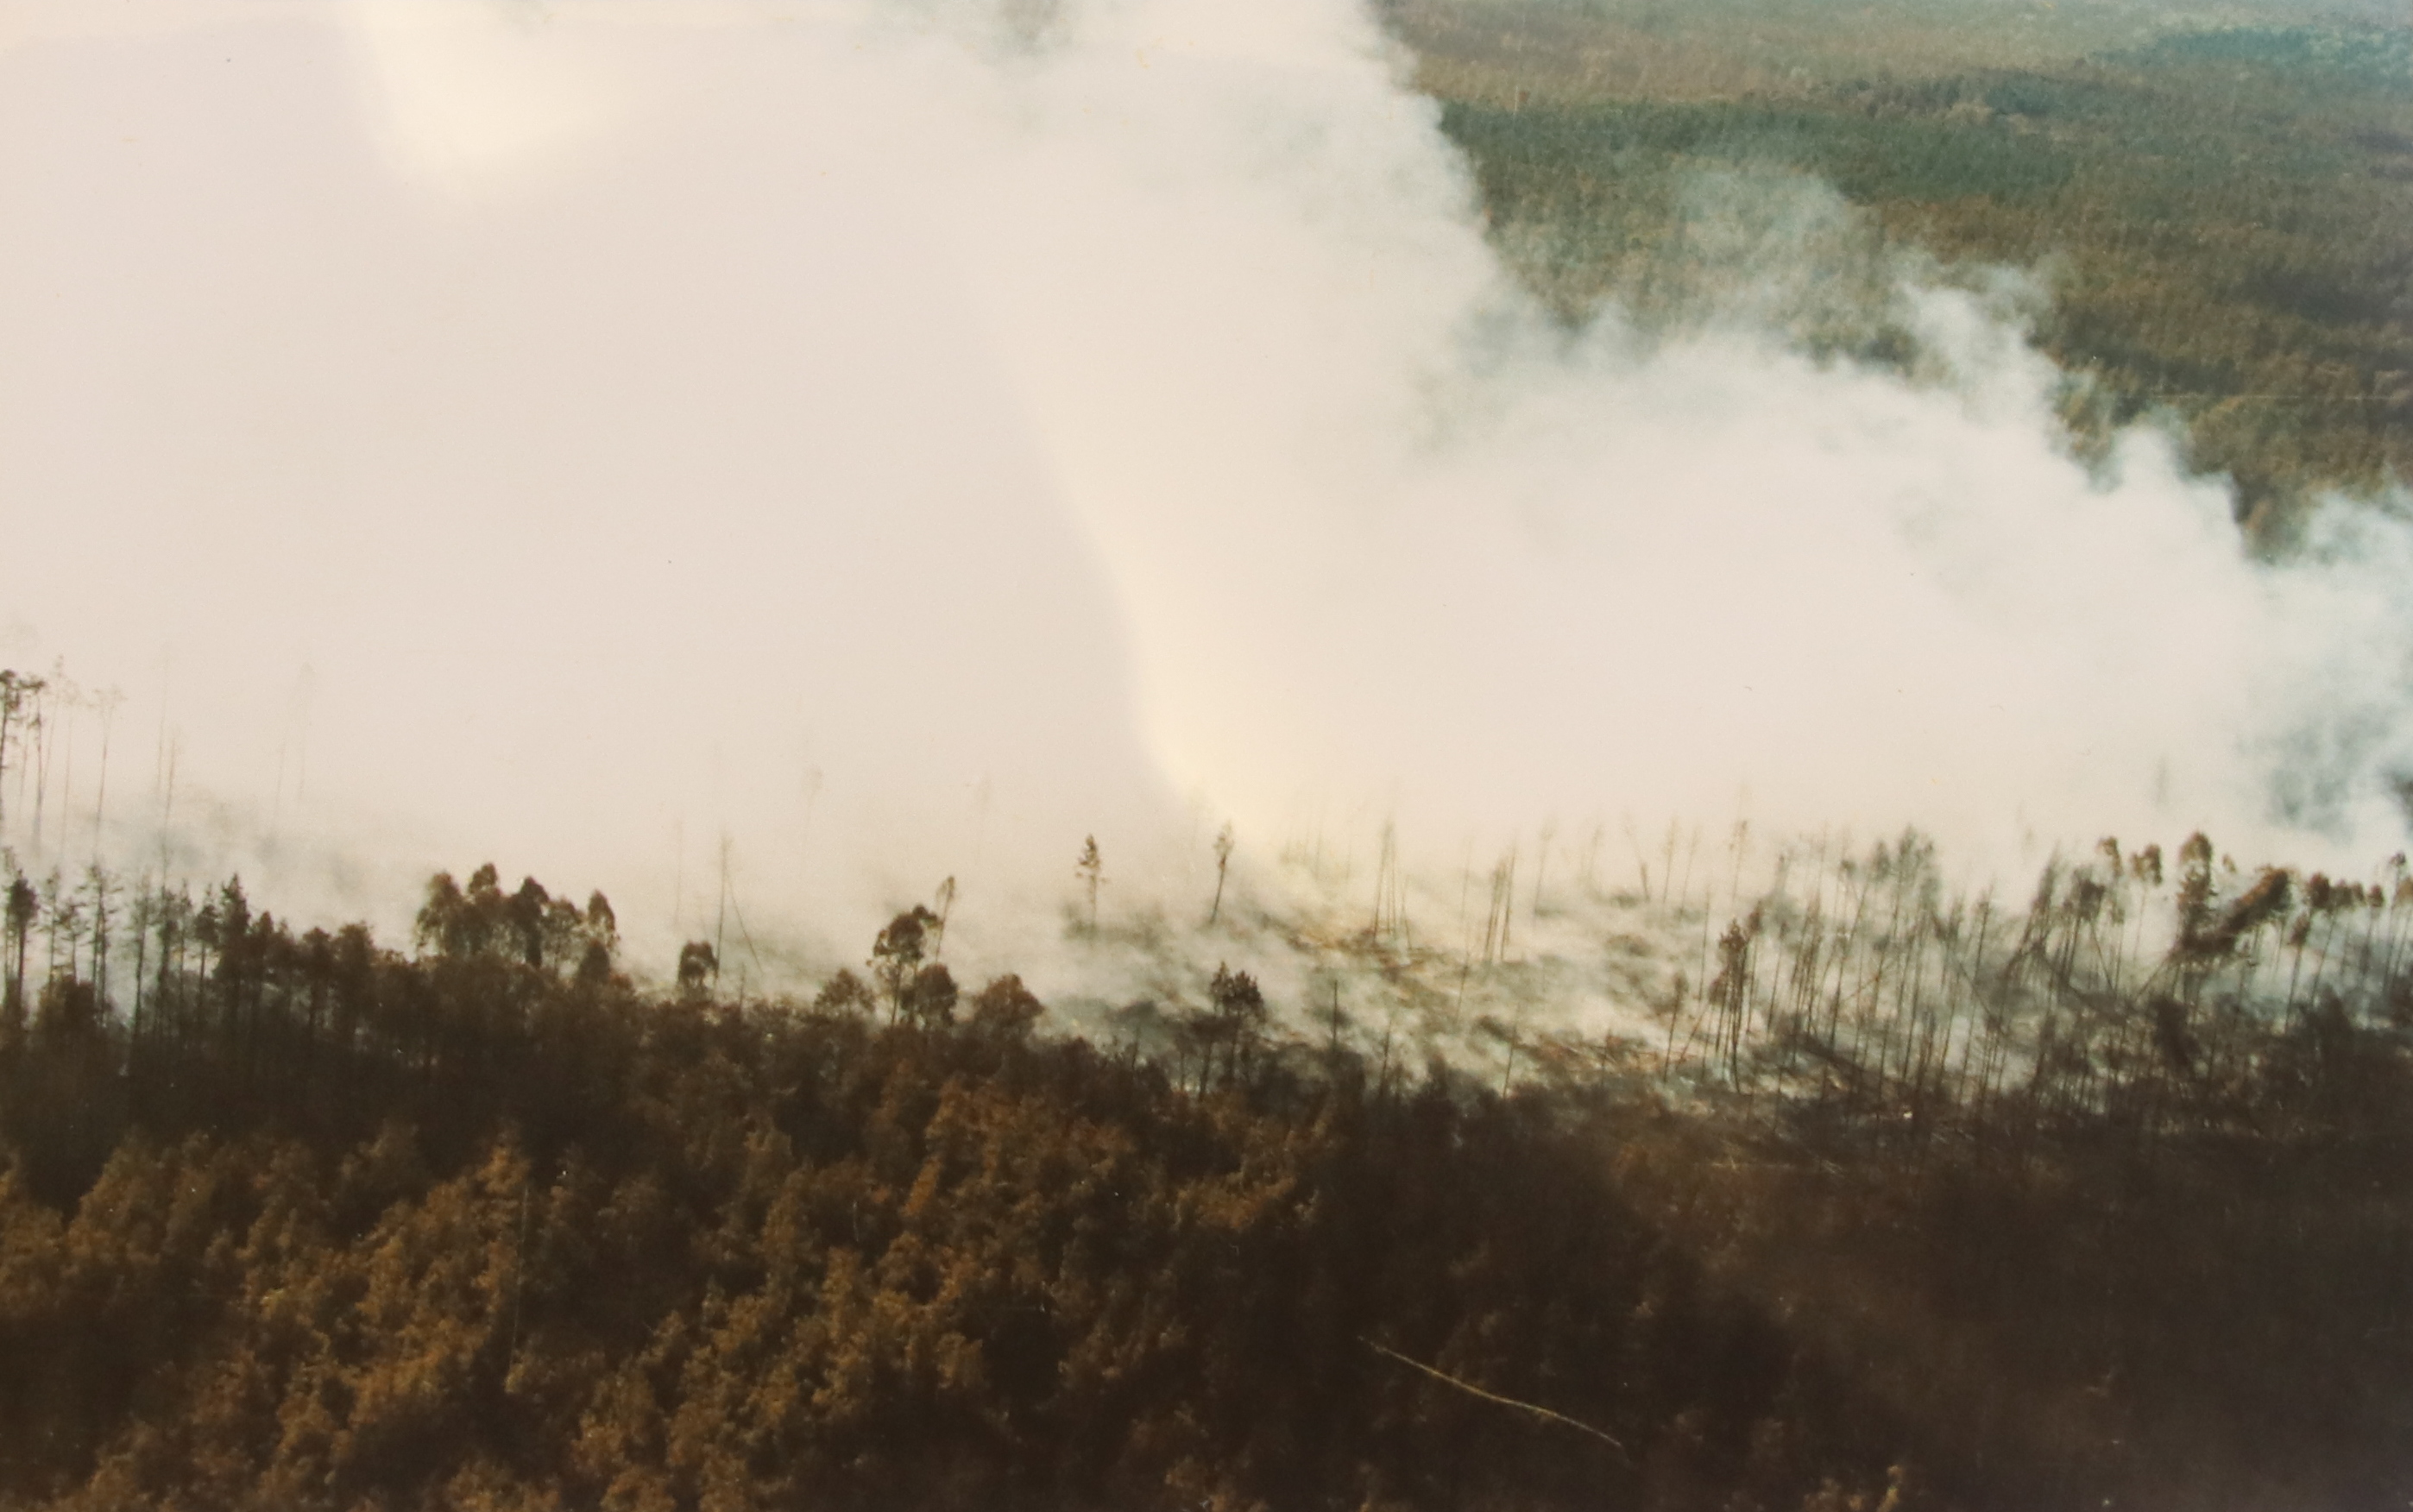 26 sierpnia 1992 roku, w lasach koło Kuźni Raciborskiej wybuchł największy pożar w powojennej historii Polski (fot. arch. prywatne)